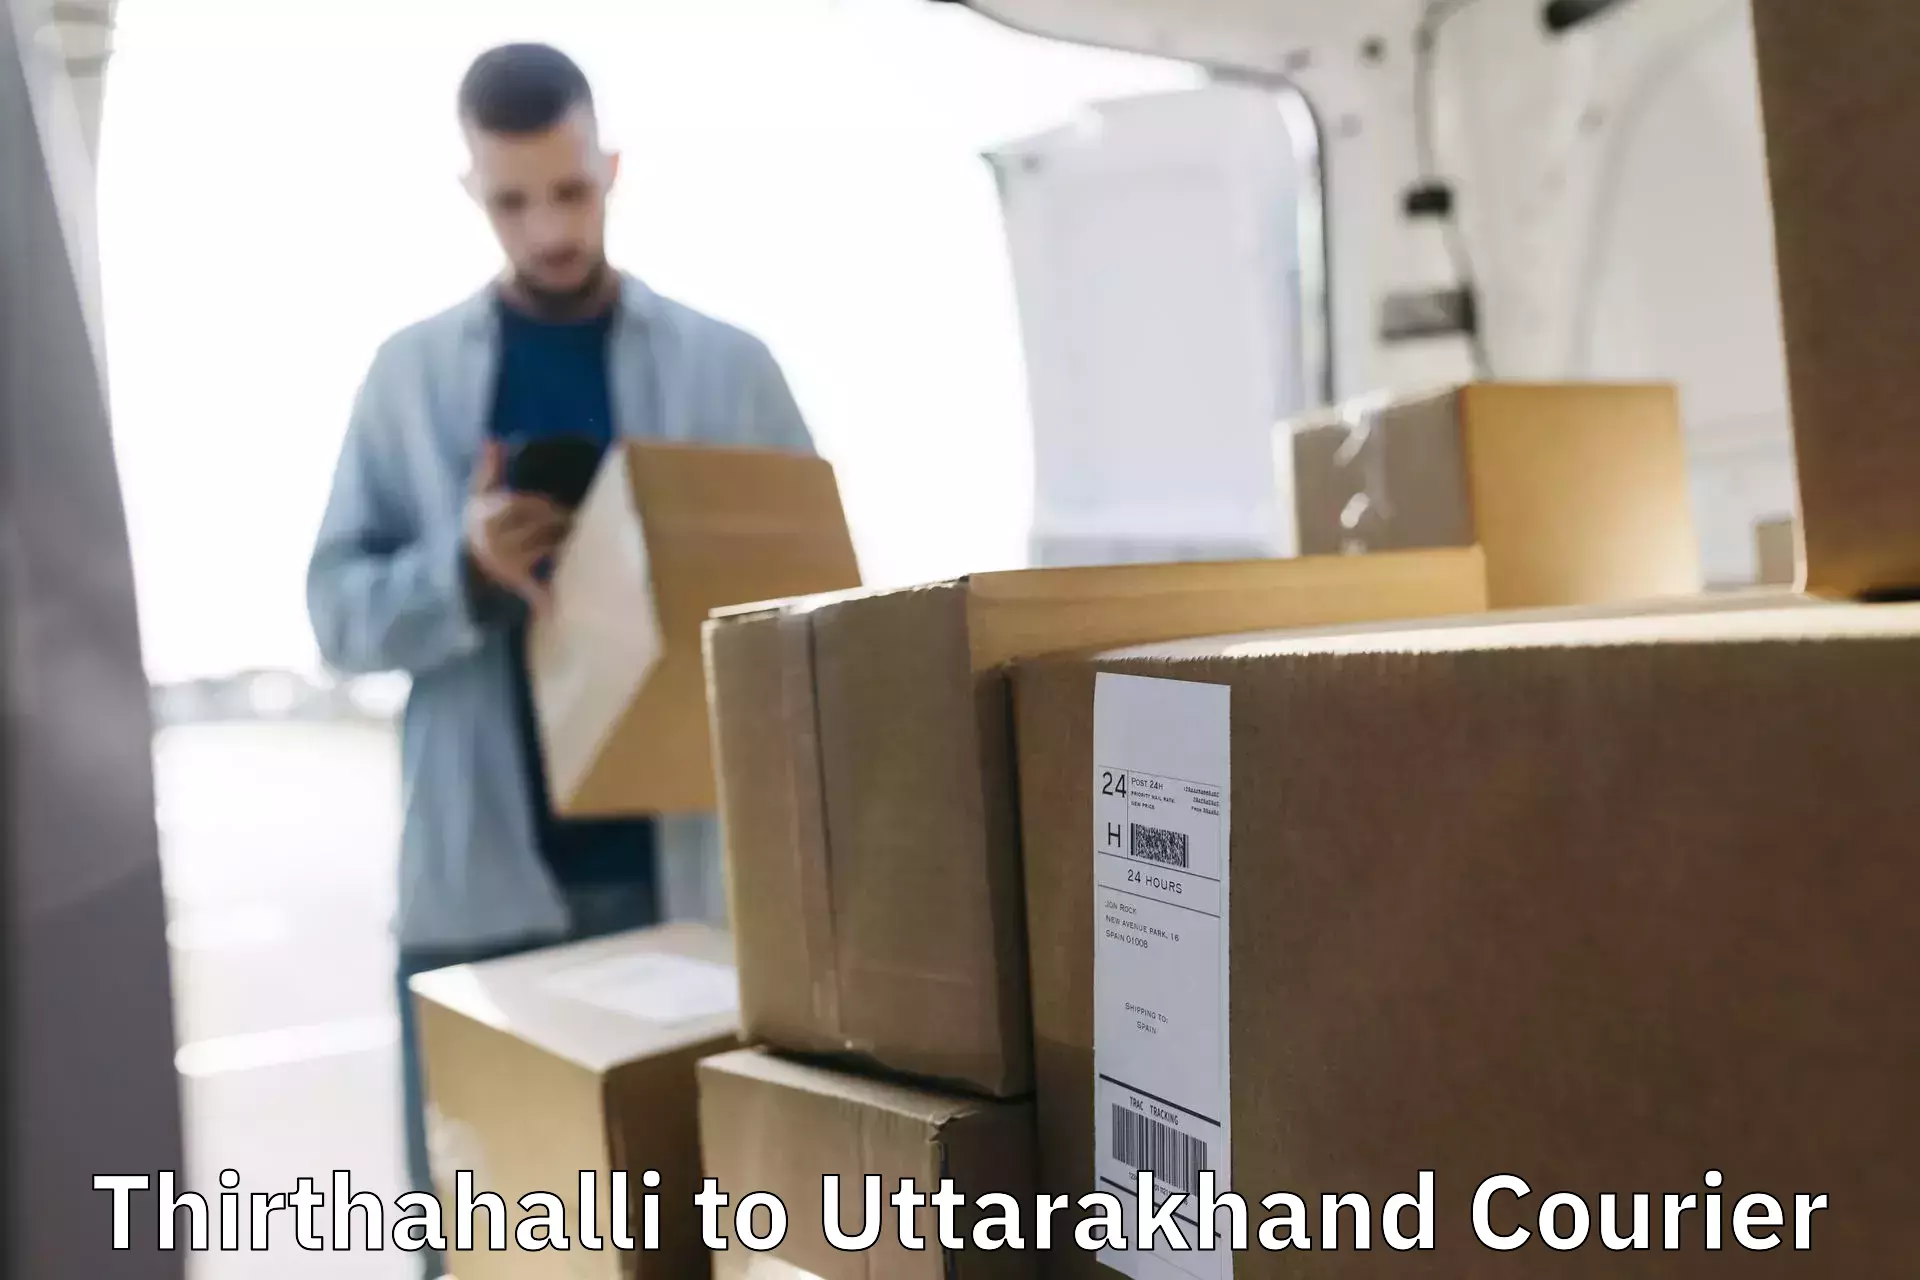 Tracking updates in Thirthahalli to Nainital